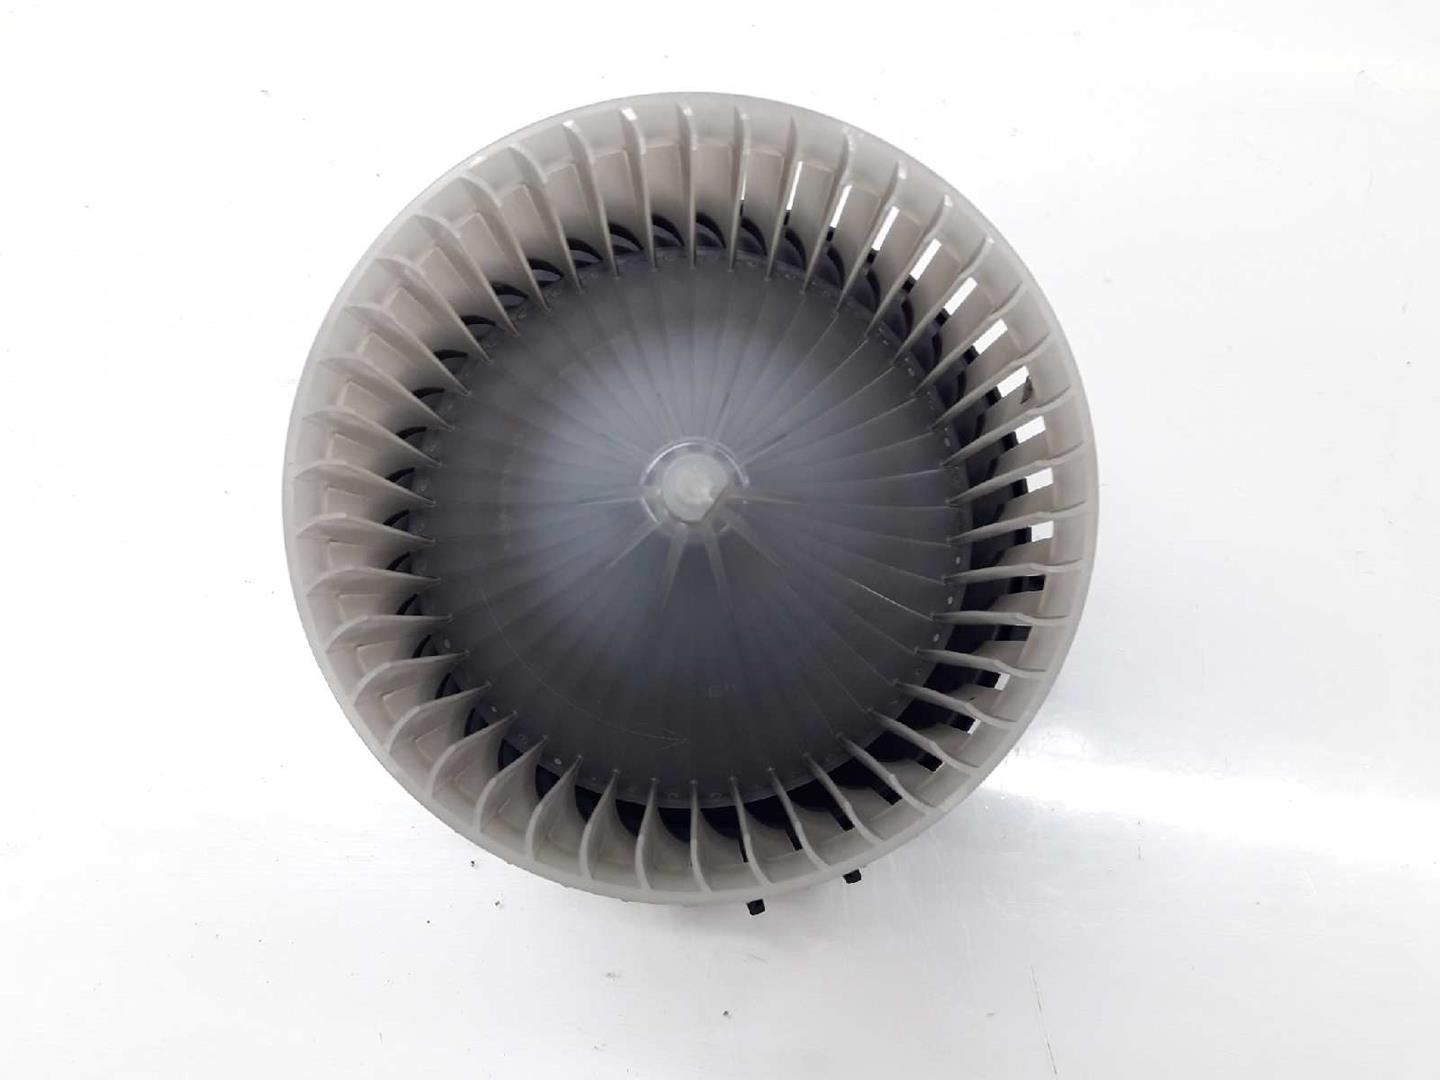 OPEL Corsa D (2006-2020) Heater Blower Fan 13263279, 5242673401 19643037